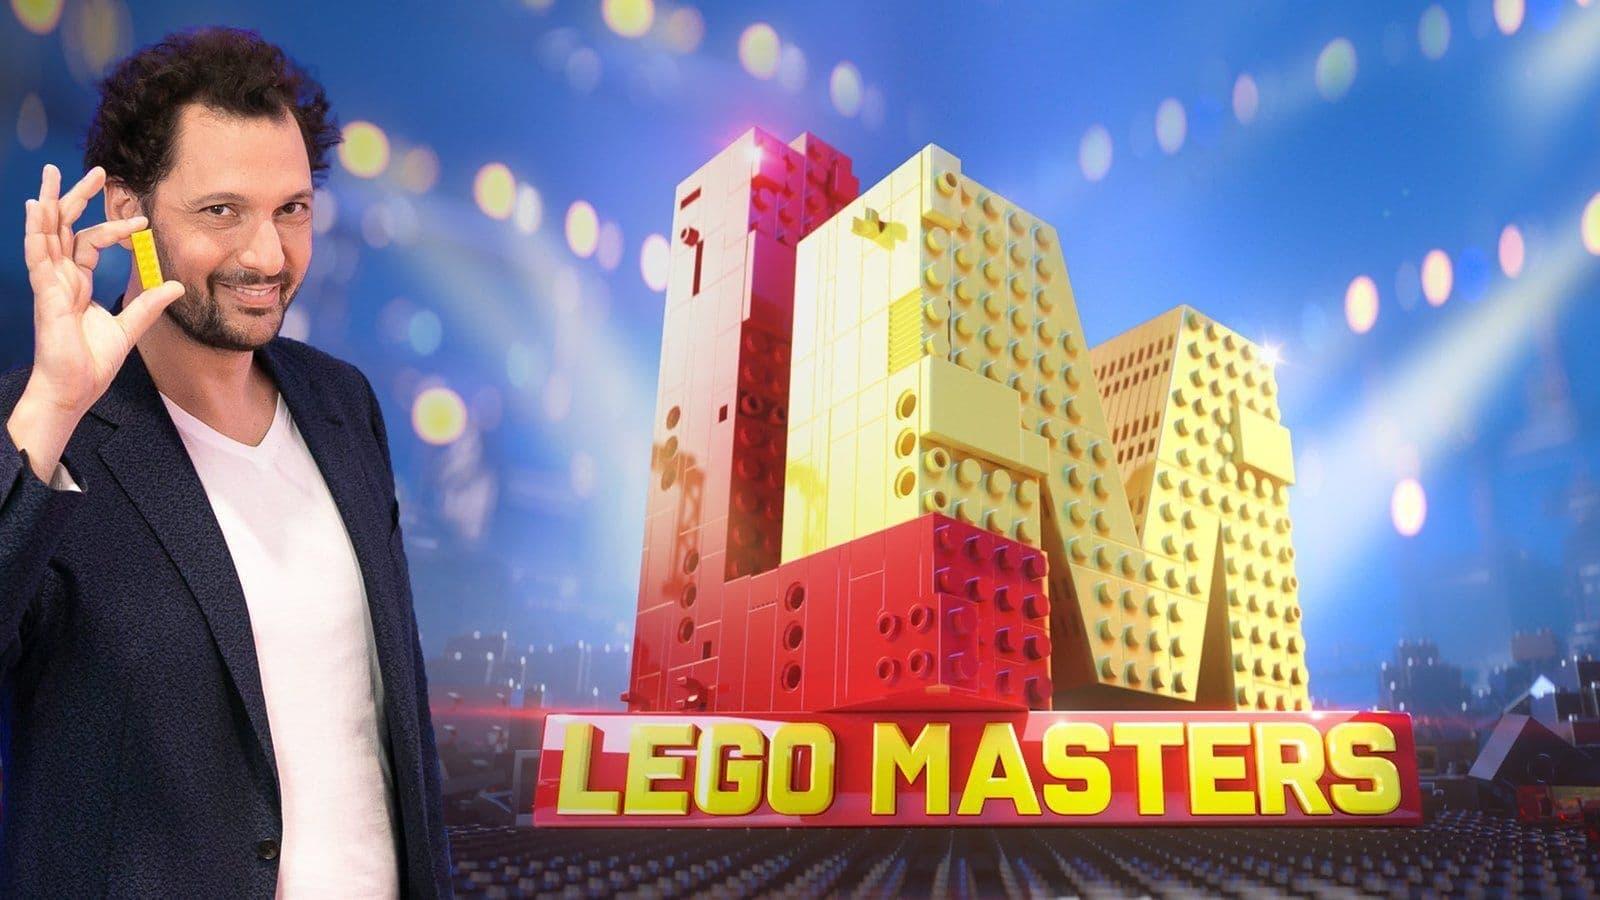 Lego Masters backdrop